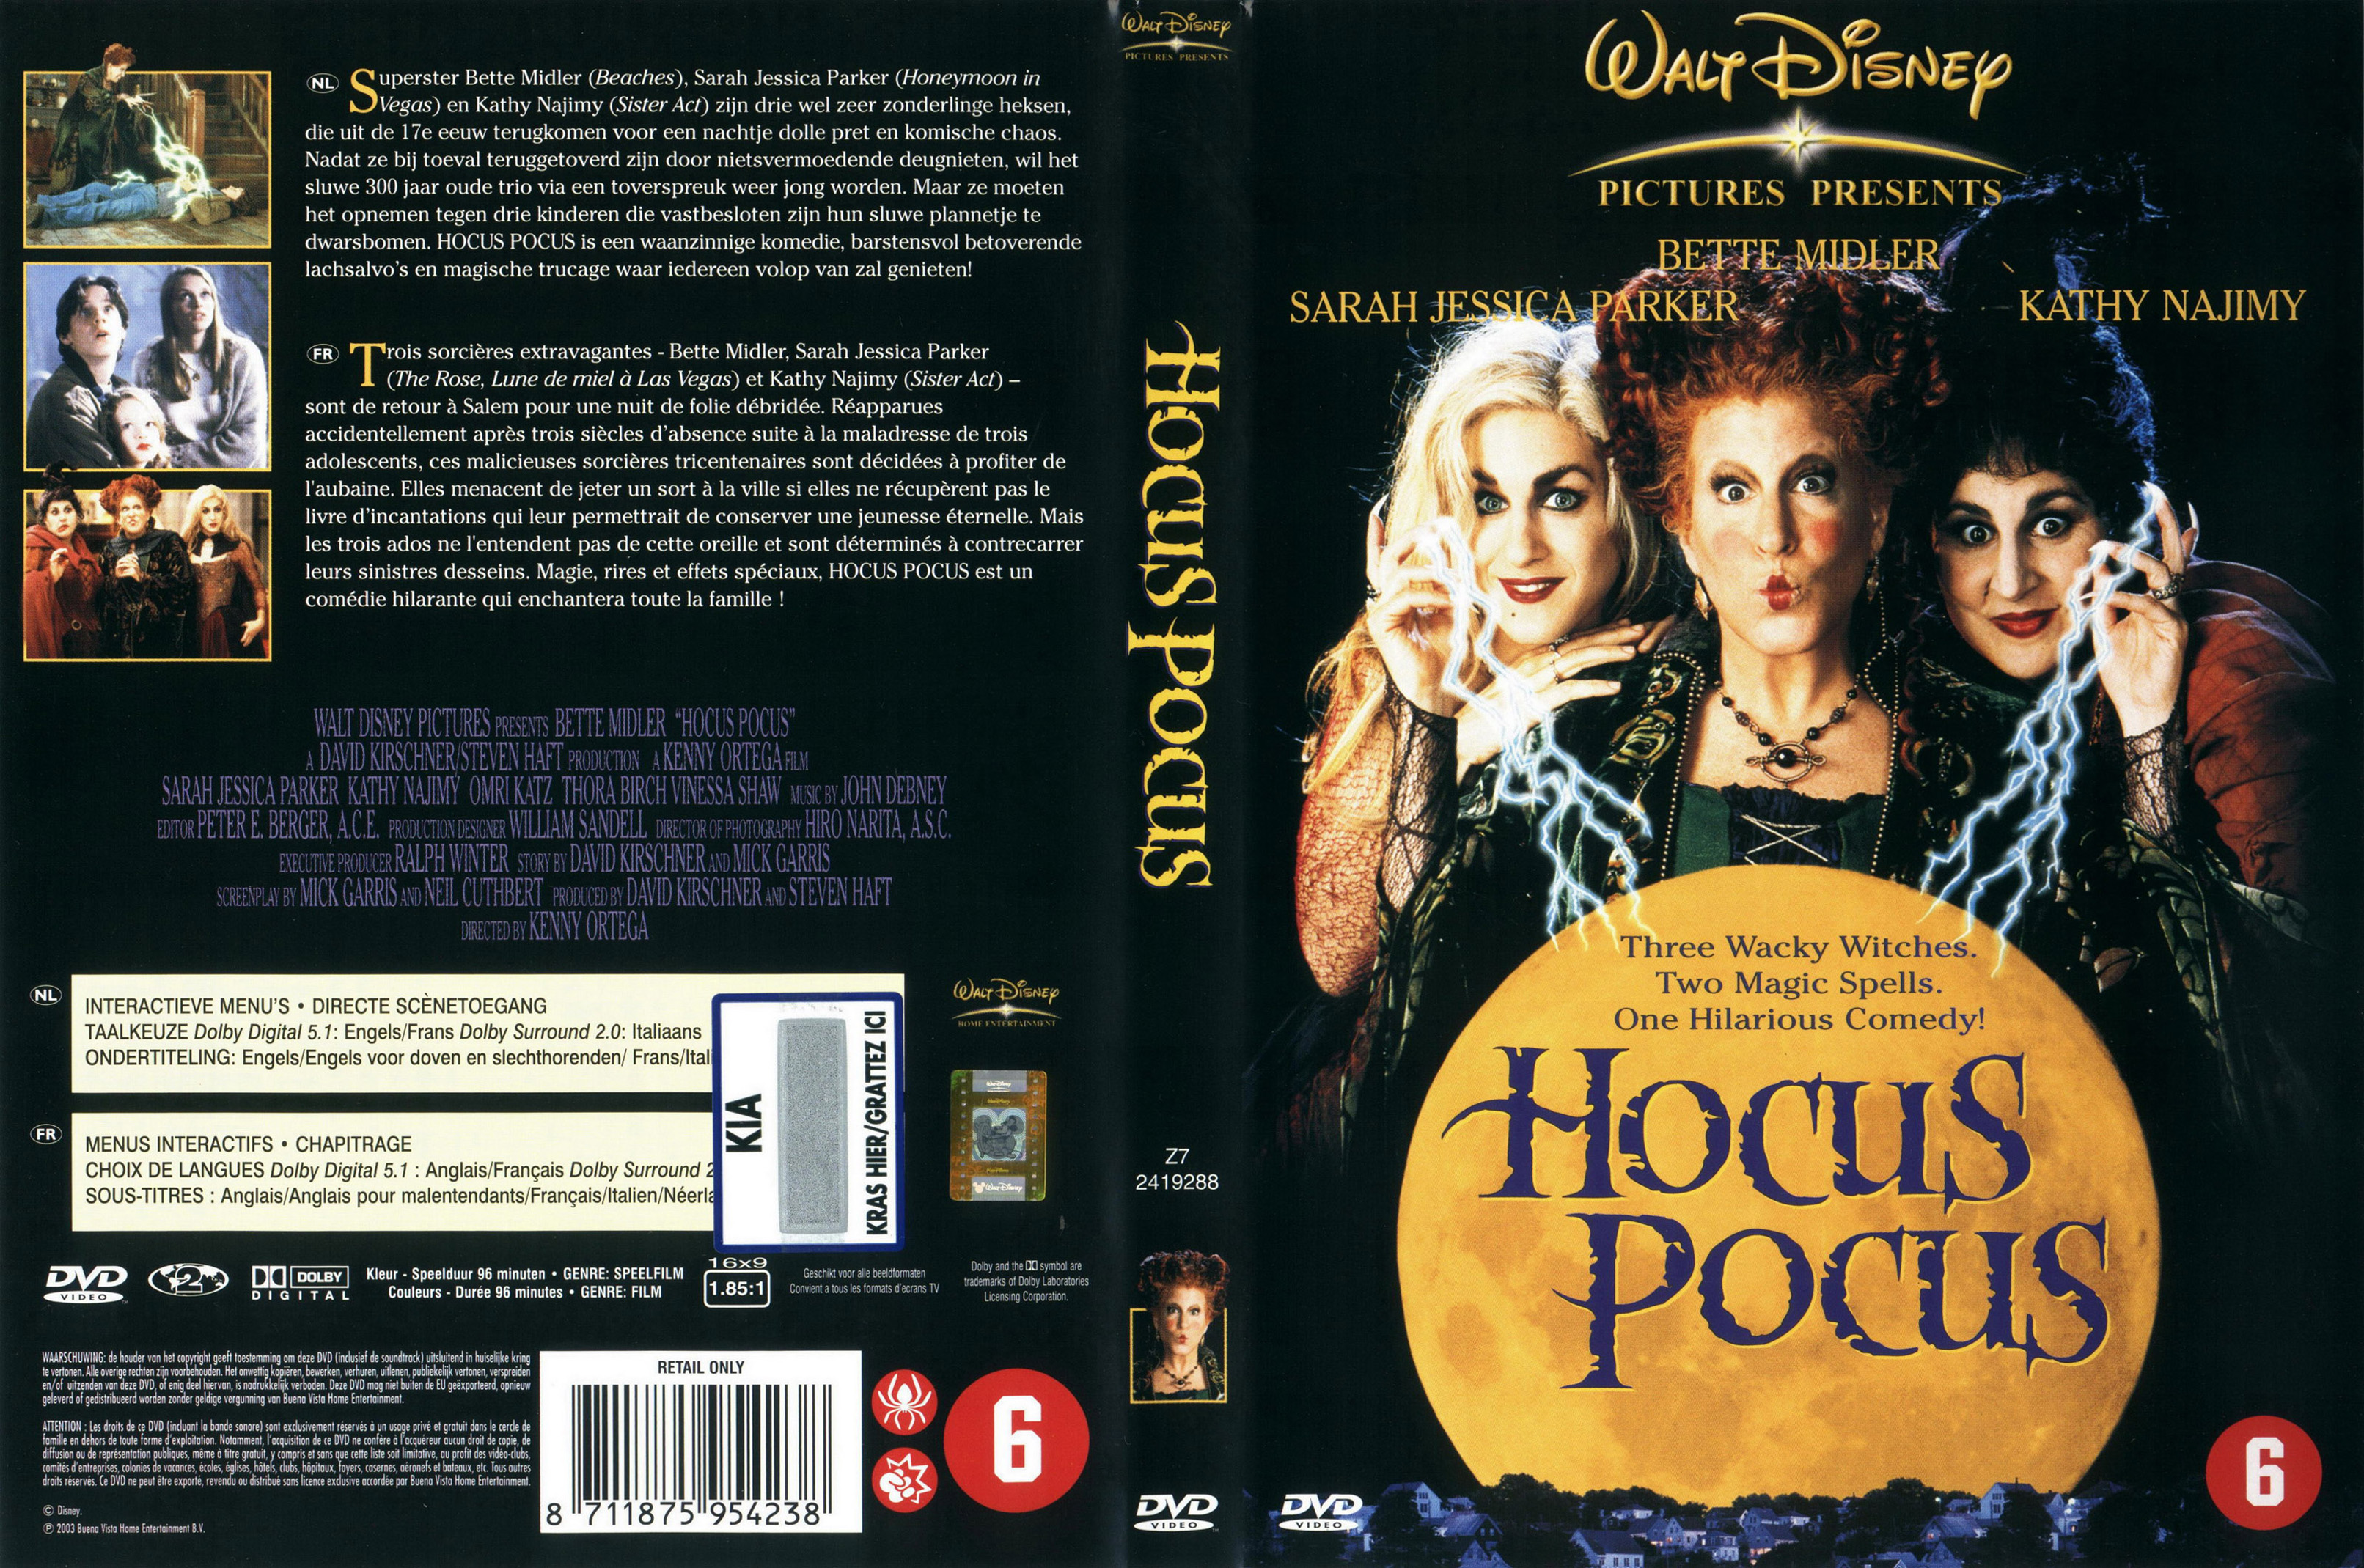 Jaquette DVD Hocus pocus